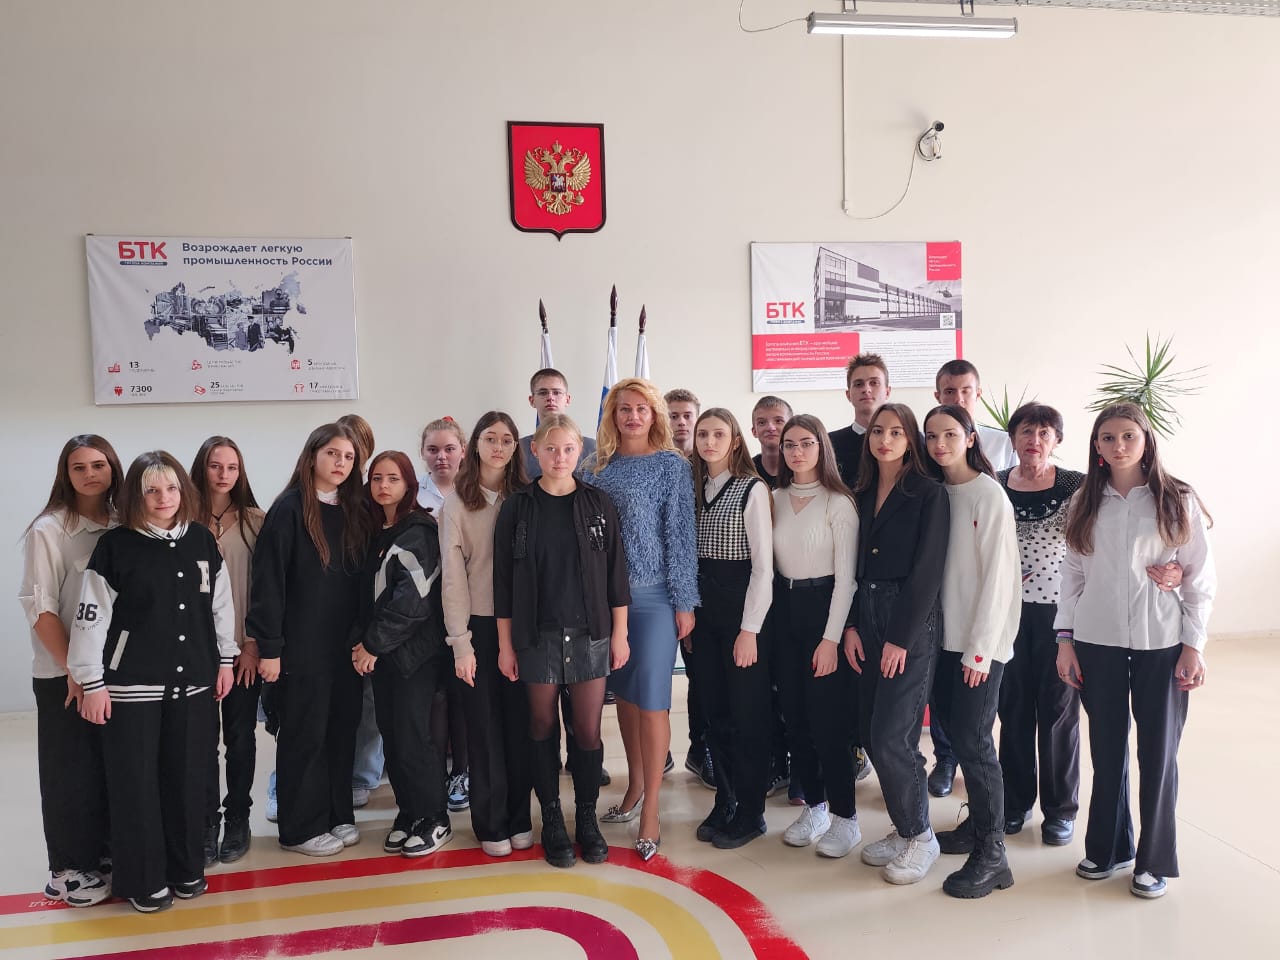 Около 80 школьников посетили экскурсию на крупнейшем производственном комплексе и участнике Кластера легкой промышленности Ростовской области «БТК групп». ЕвроМедиа